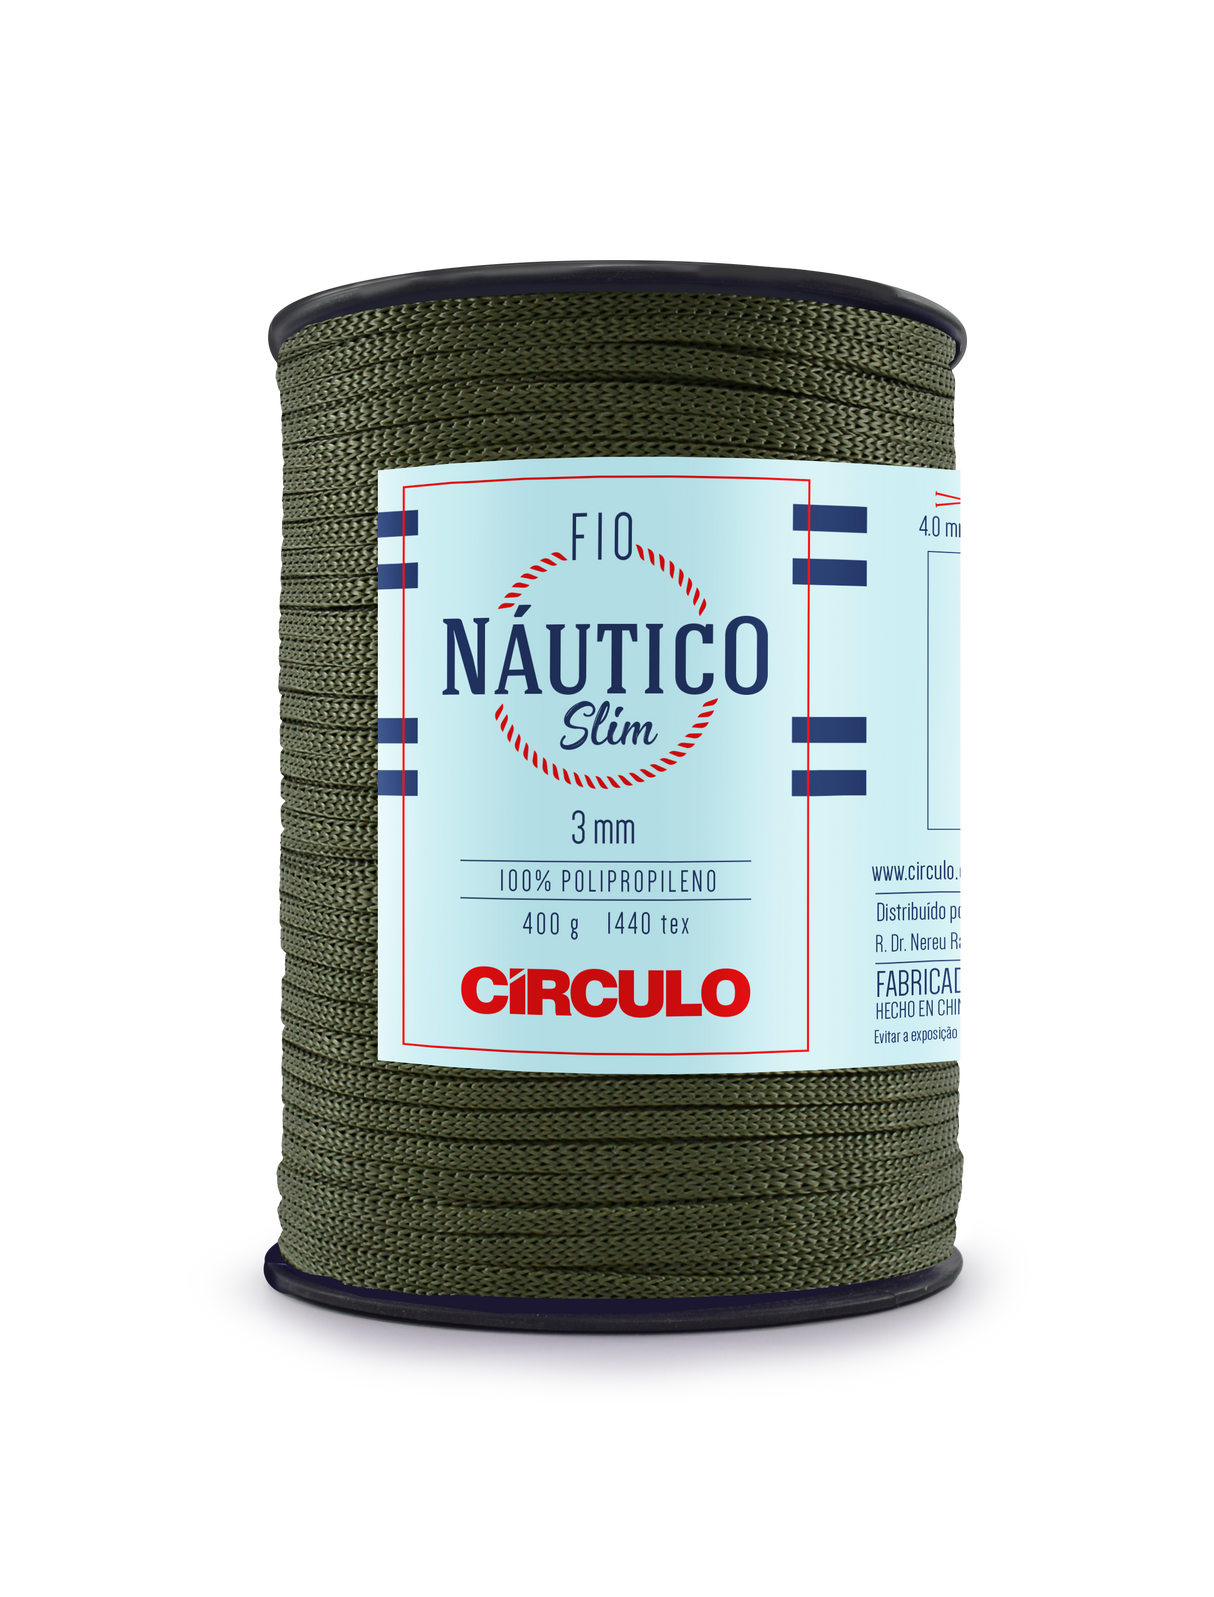 Circulo Fio Nautico Slim 3 mm color 5368